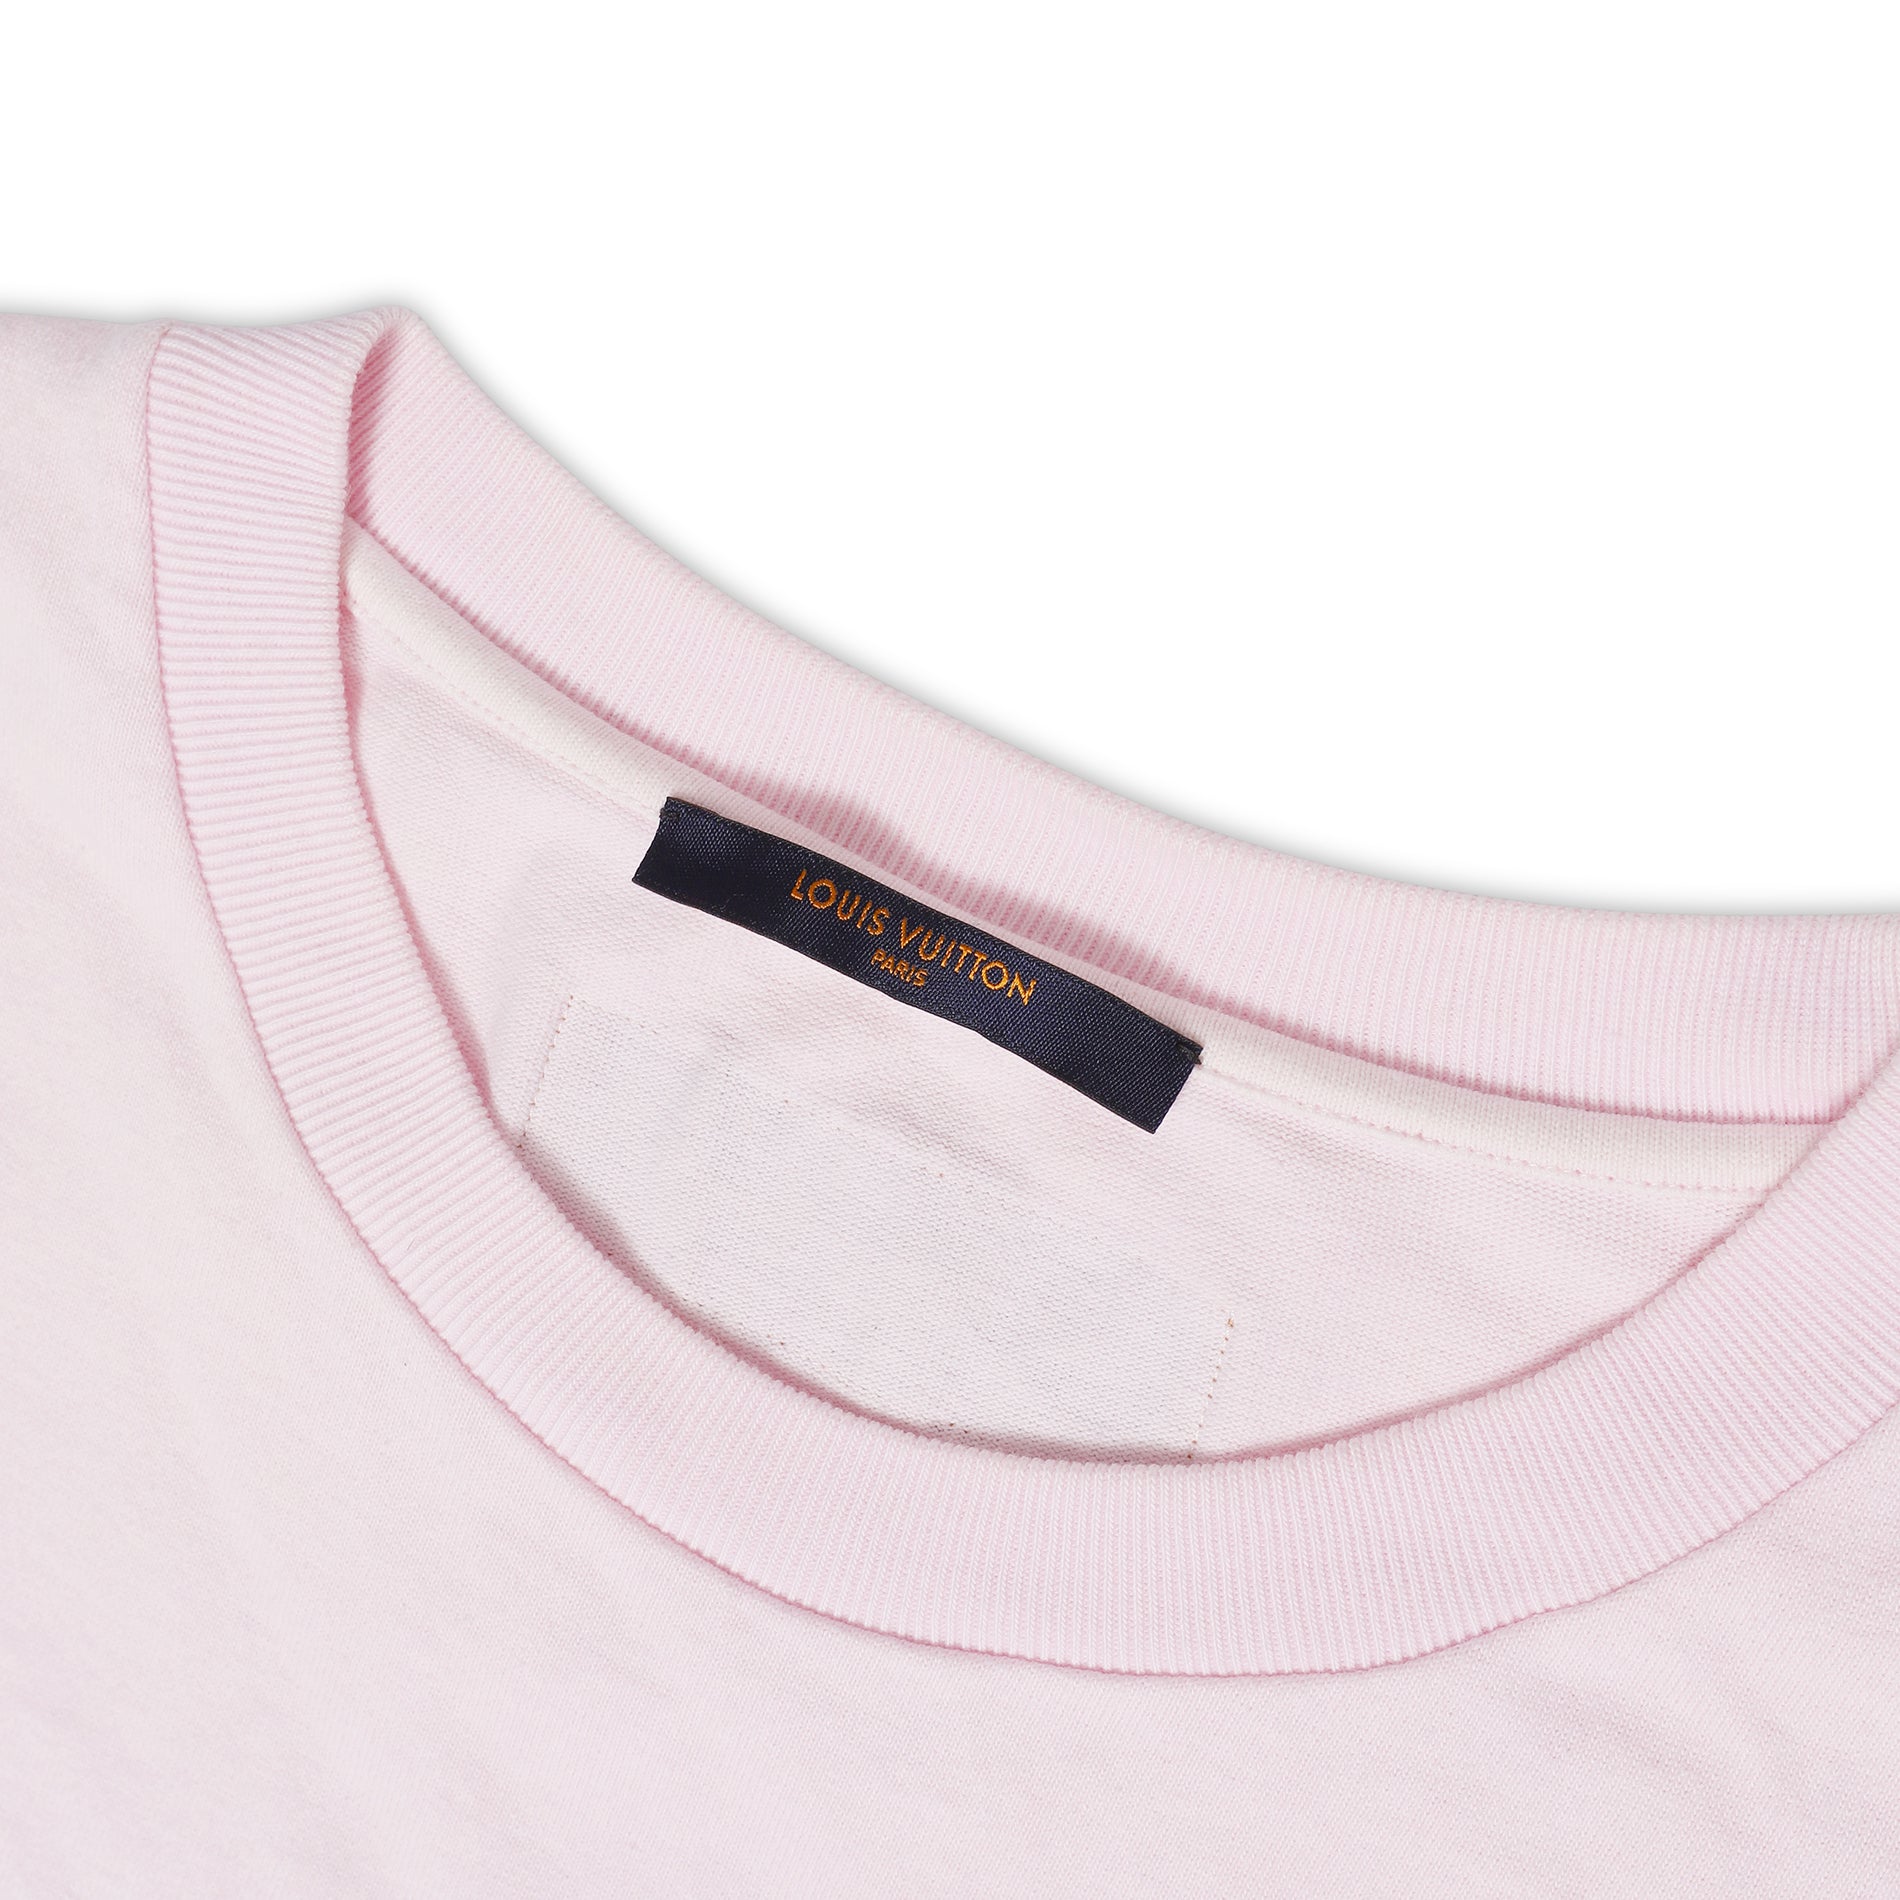 Louis Vuitton SS20 Inside-Out T-Shirt